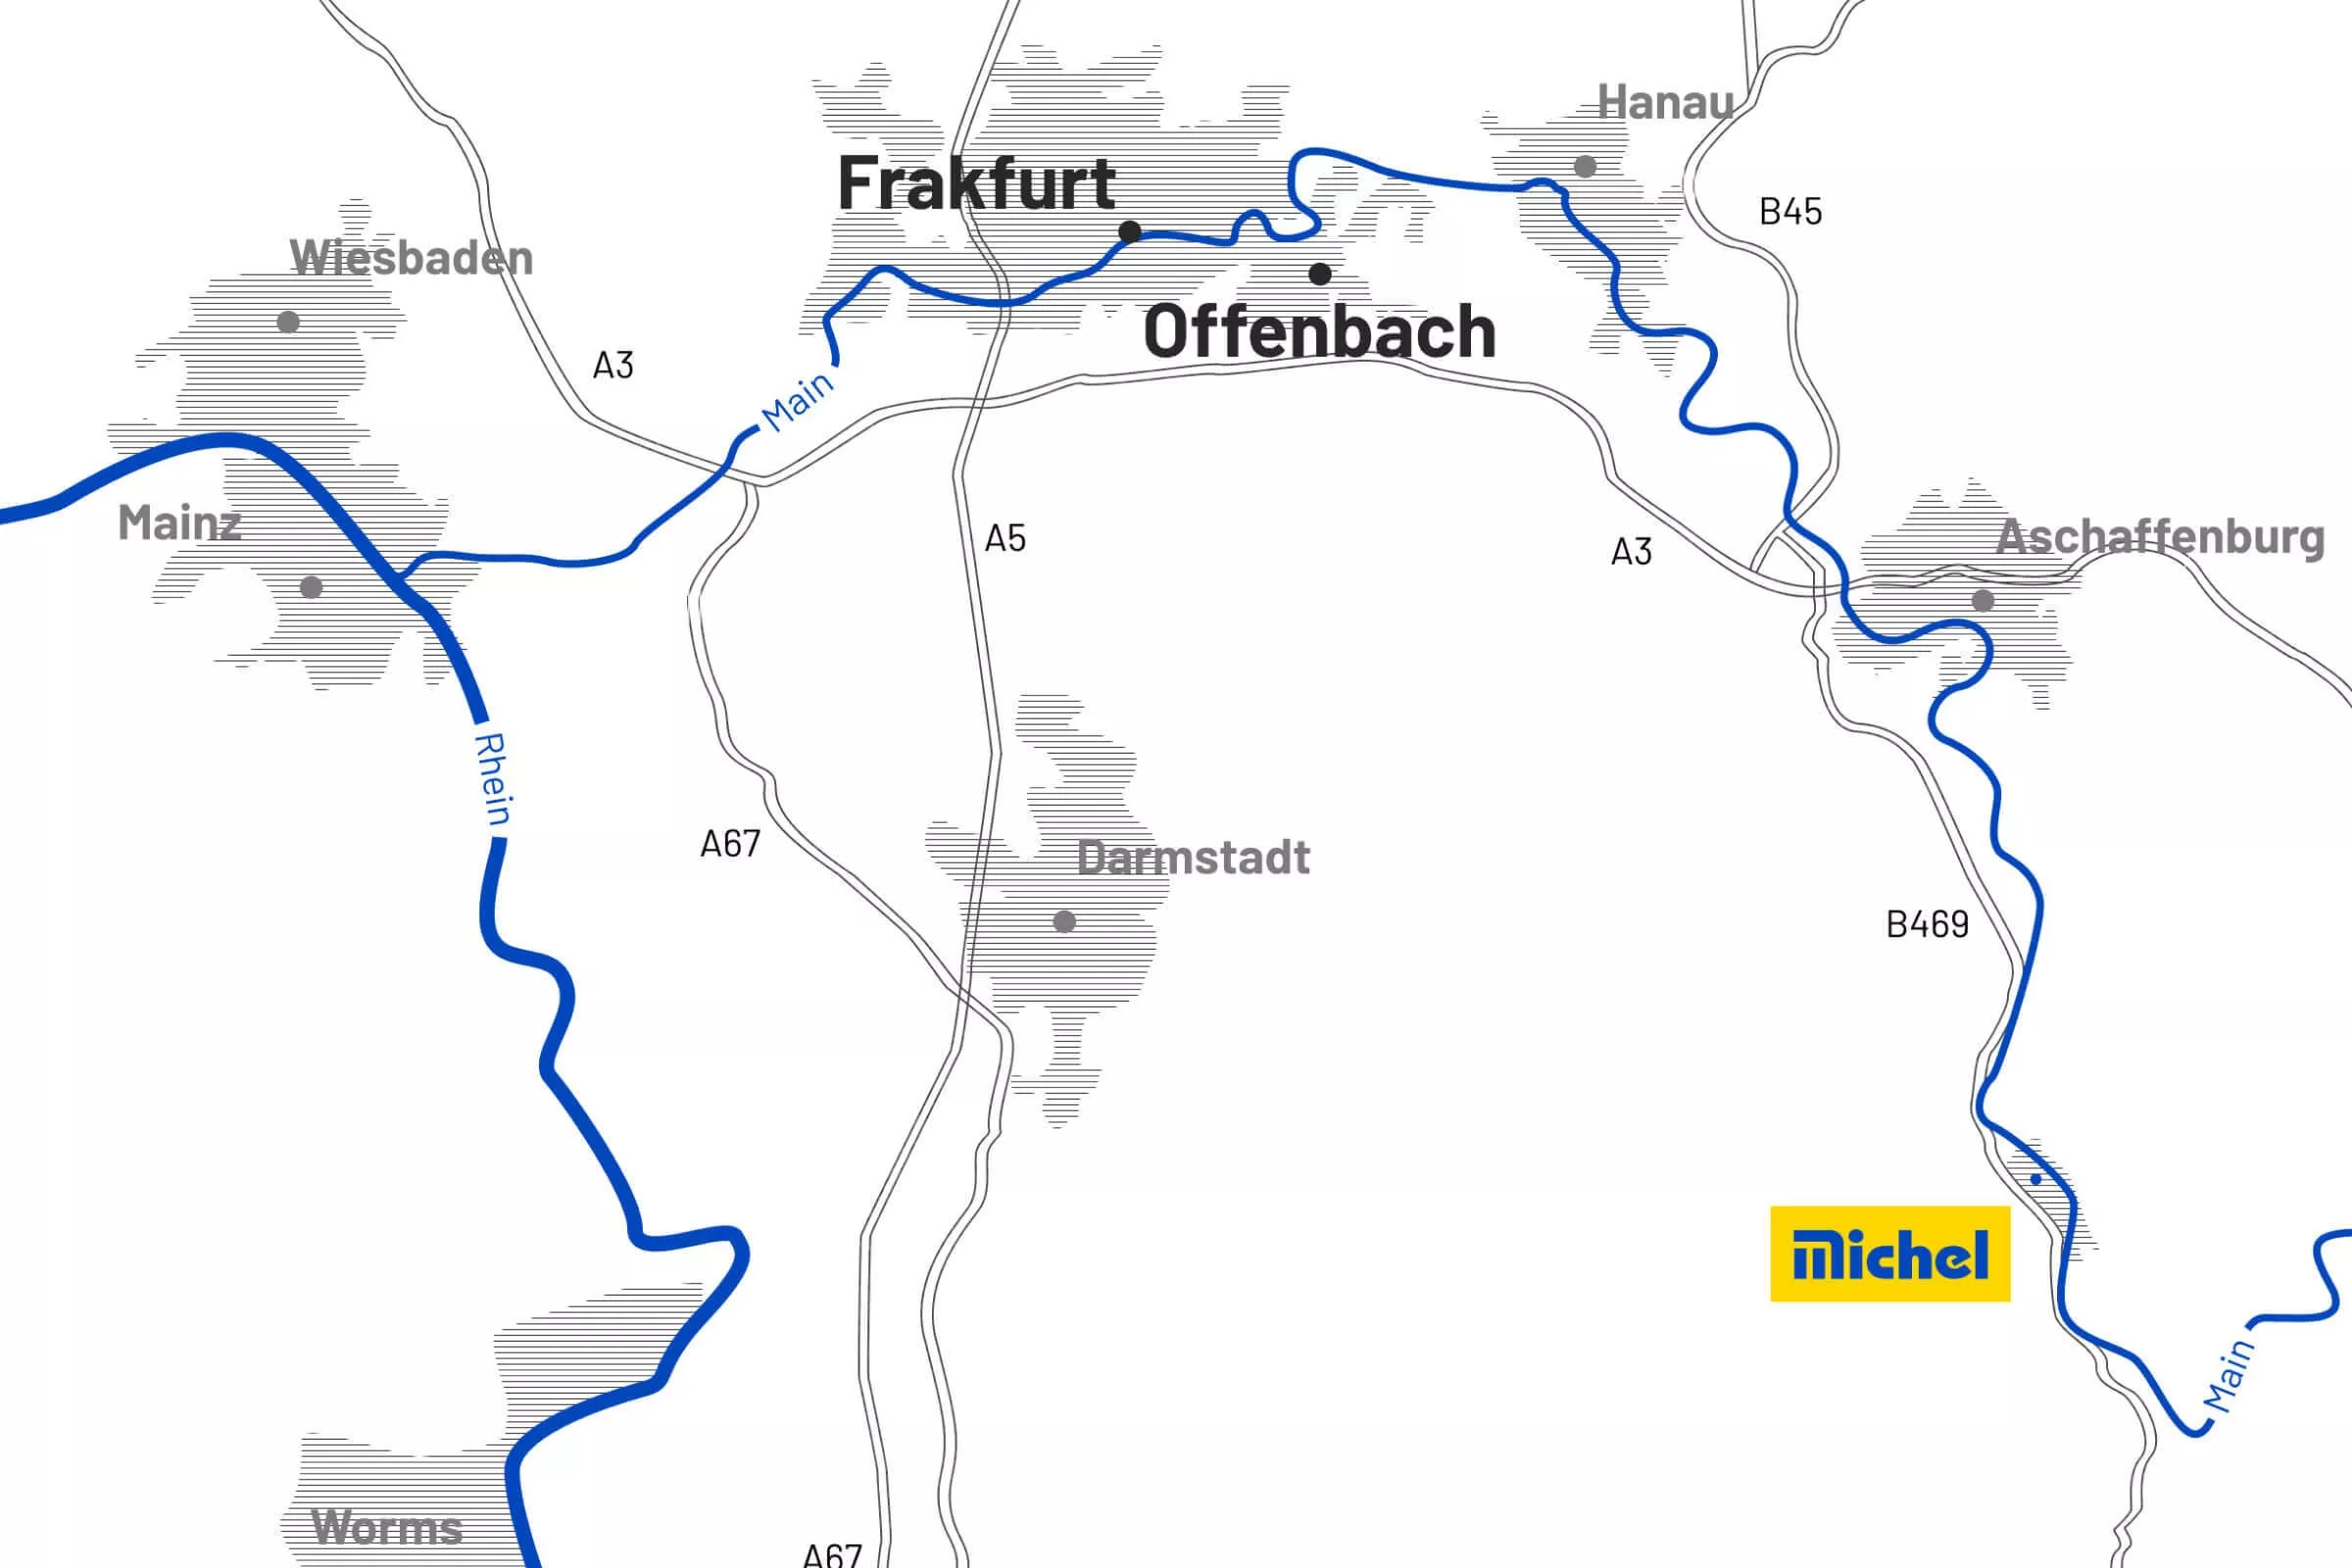 map-rhine-main-area-construction-company-near-frankfurt-offenbach-hanau-v3-desktop-michel-bau